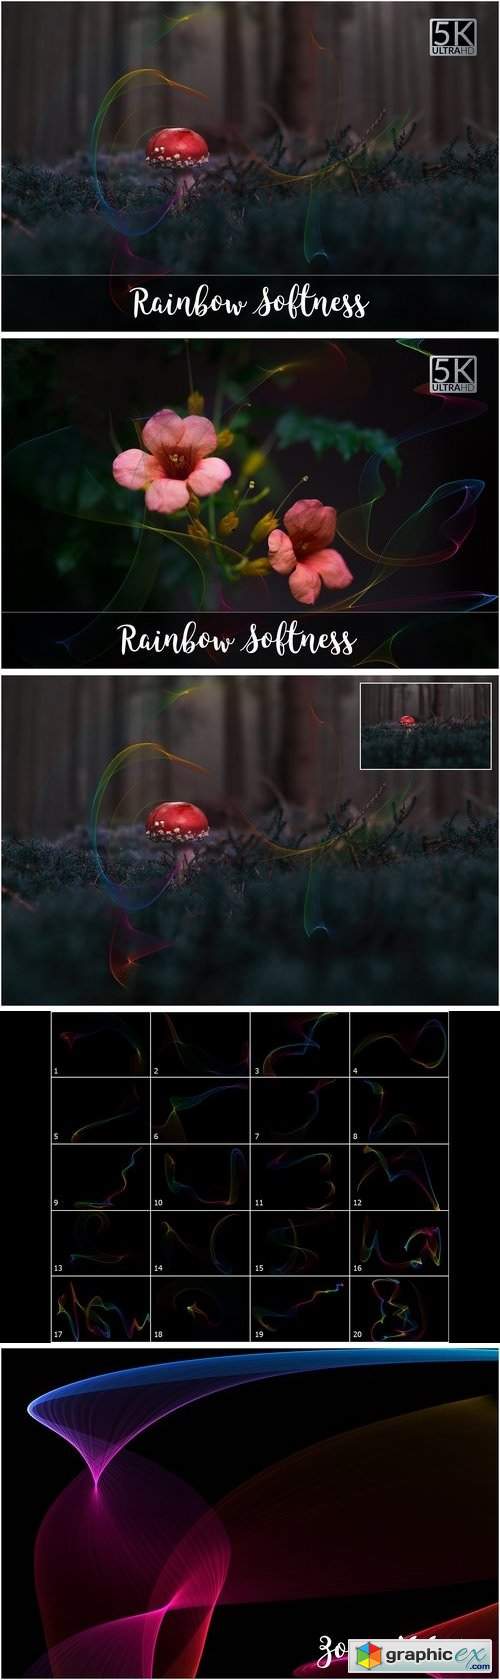 5K Rainbow Softness Overlays